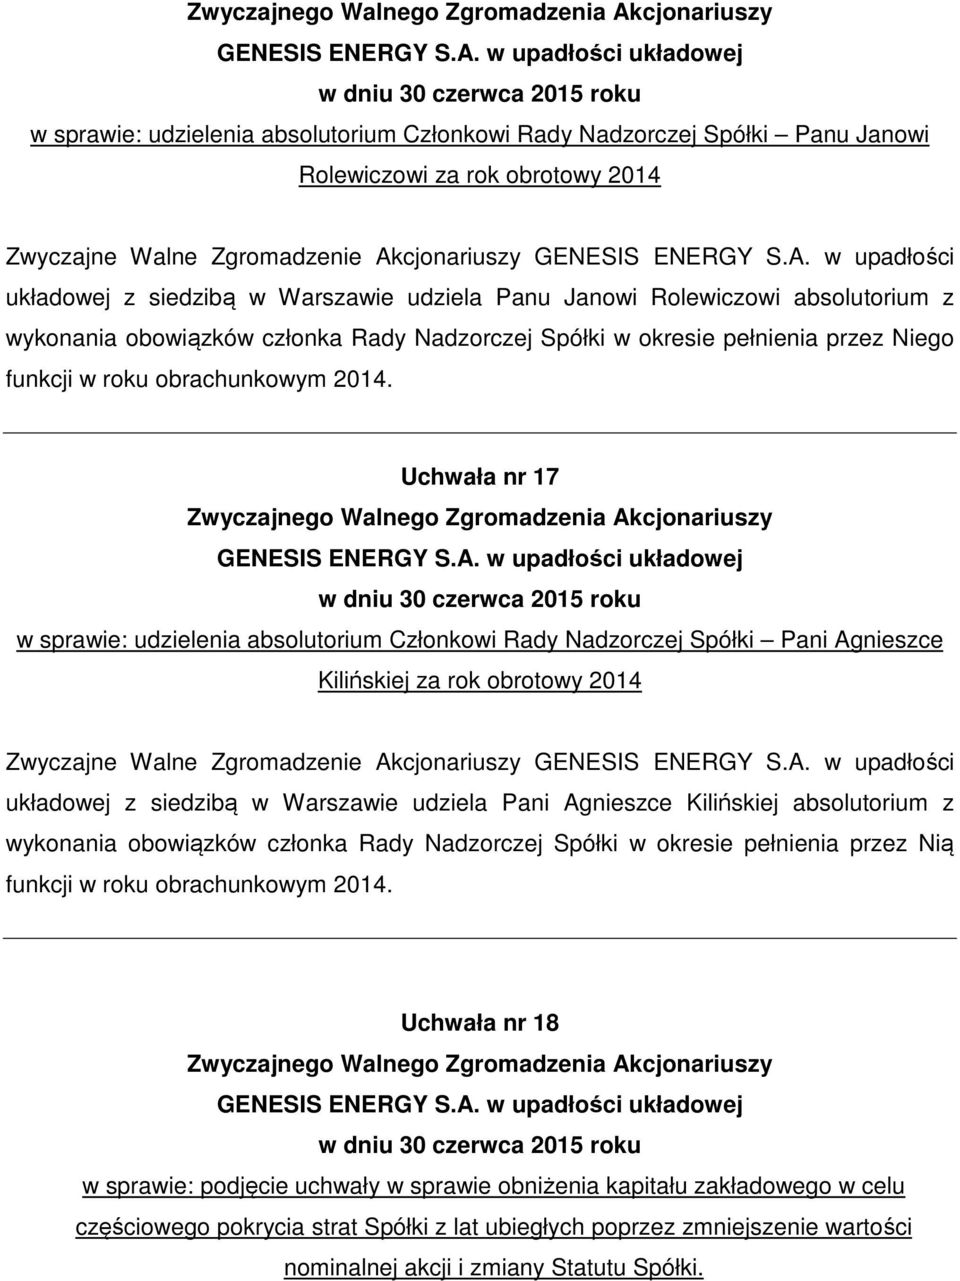 Uchwała nr 17 w sprawie: udzielenia absolutorium Członkowi Rady Nadzorczej Spółki Pani Agnieszce Kilińskiej za rok obrotowy 2014 układowej z siedzibą w Warszawie udziela Pani Agnieszce Kilińskiej